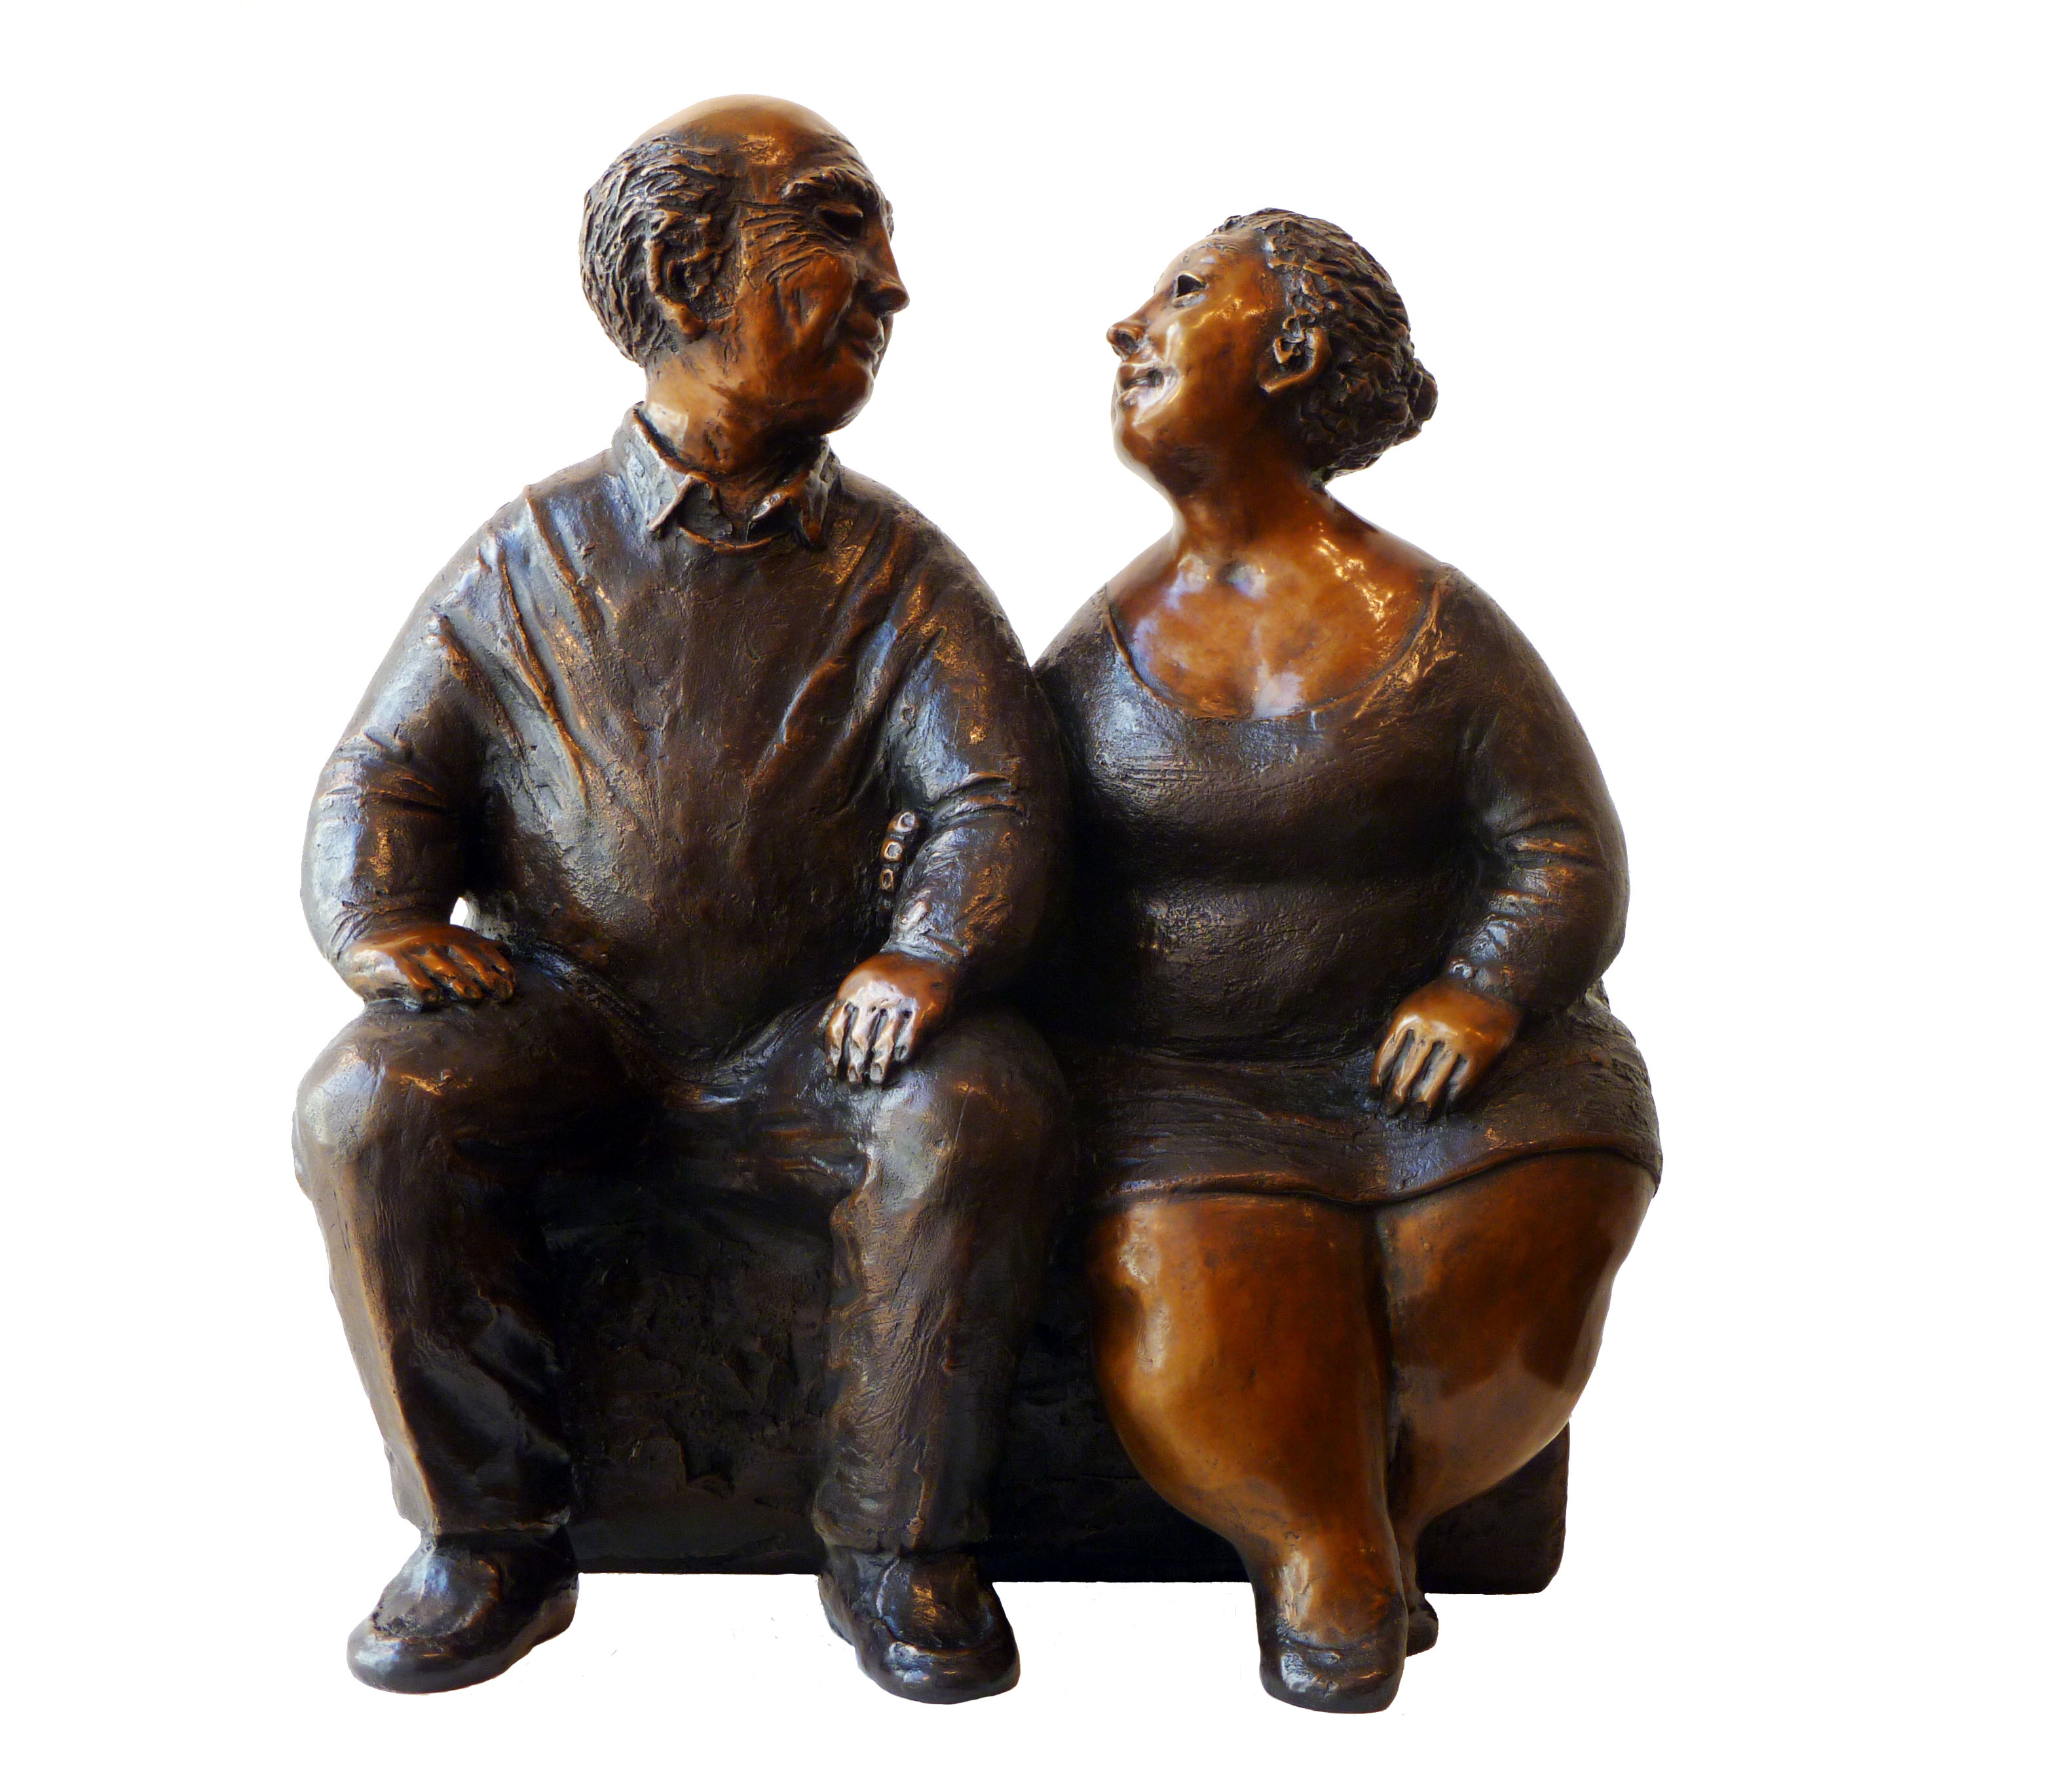 Sculpture de bronze par Rose-Aimée Bélanger à vendre en galerie d'art à Montréal. « Pour toujours » disponible à la Galerie Blanche.